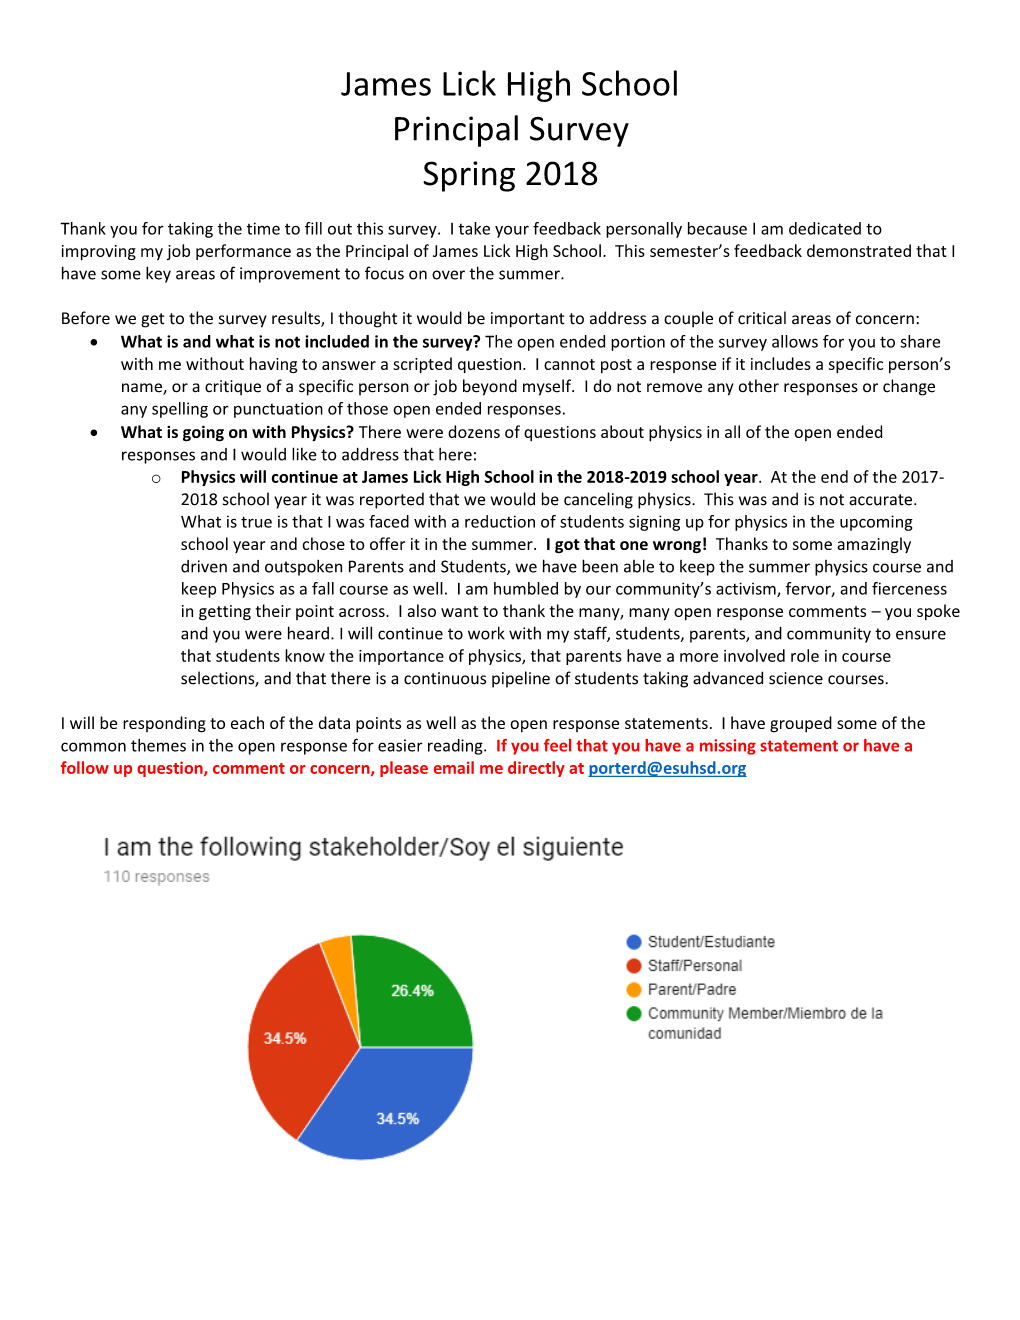 James Lick High School Principal Survey Spring 2018